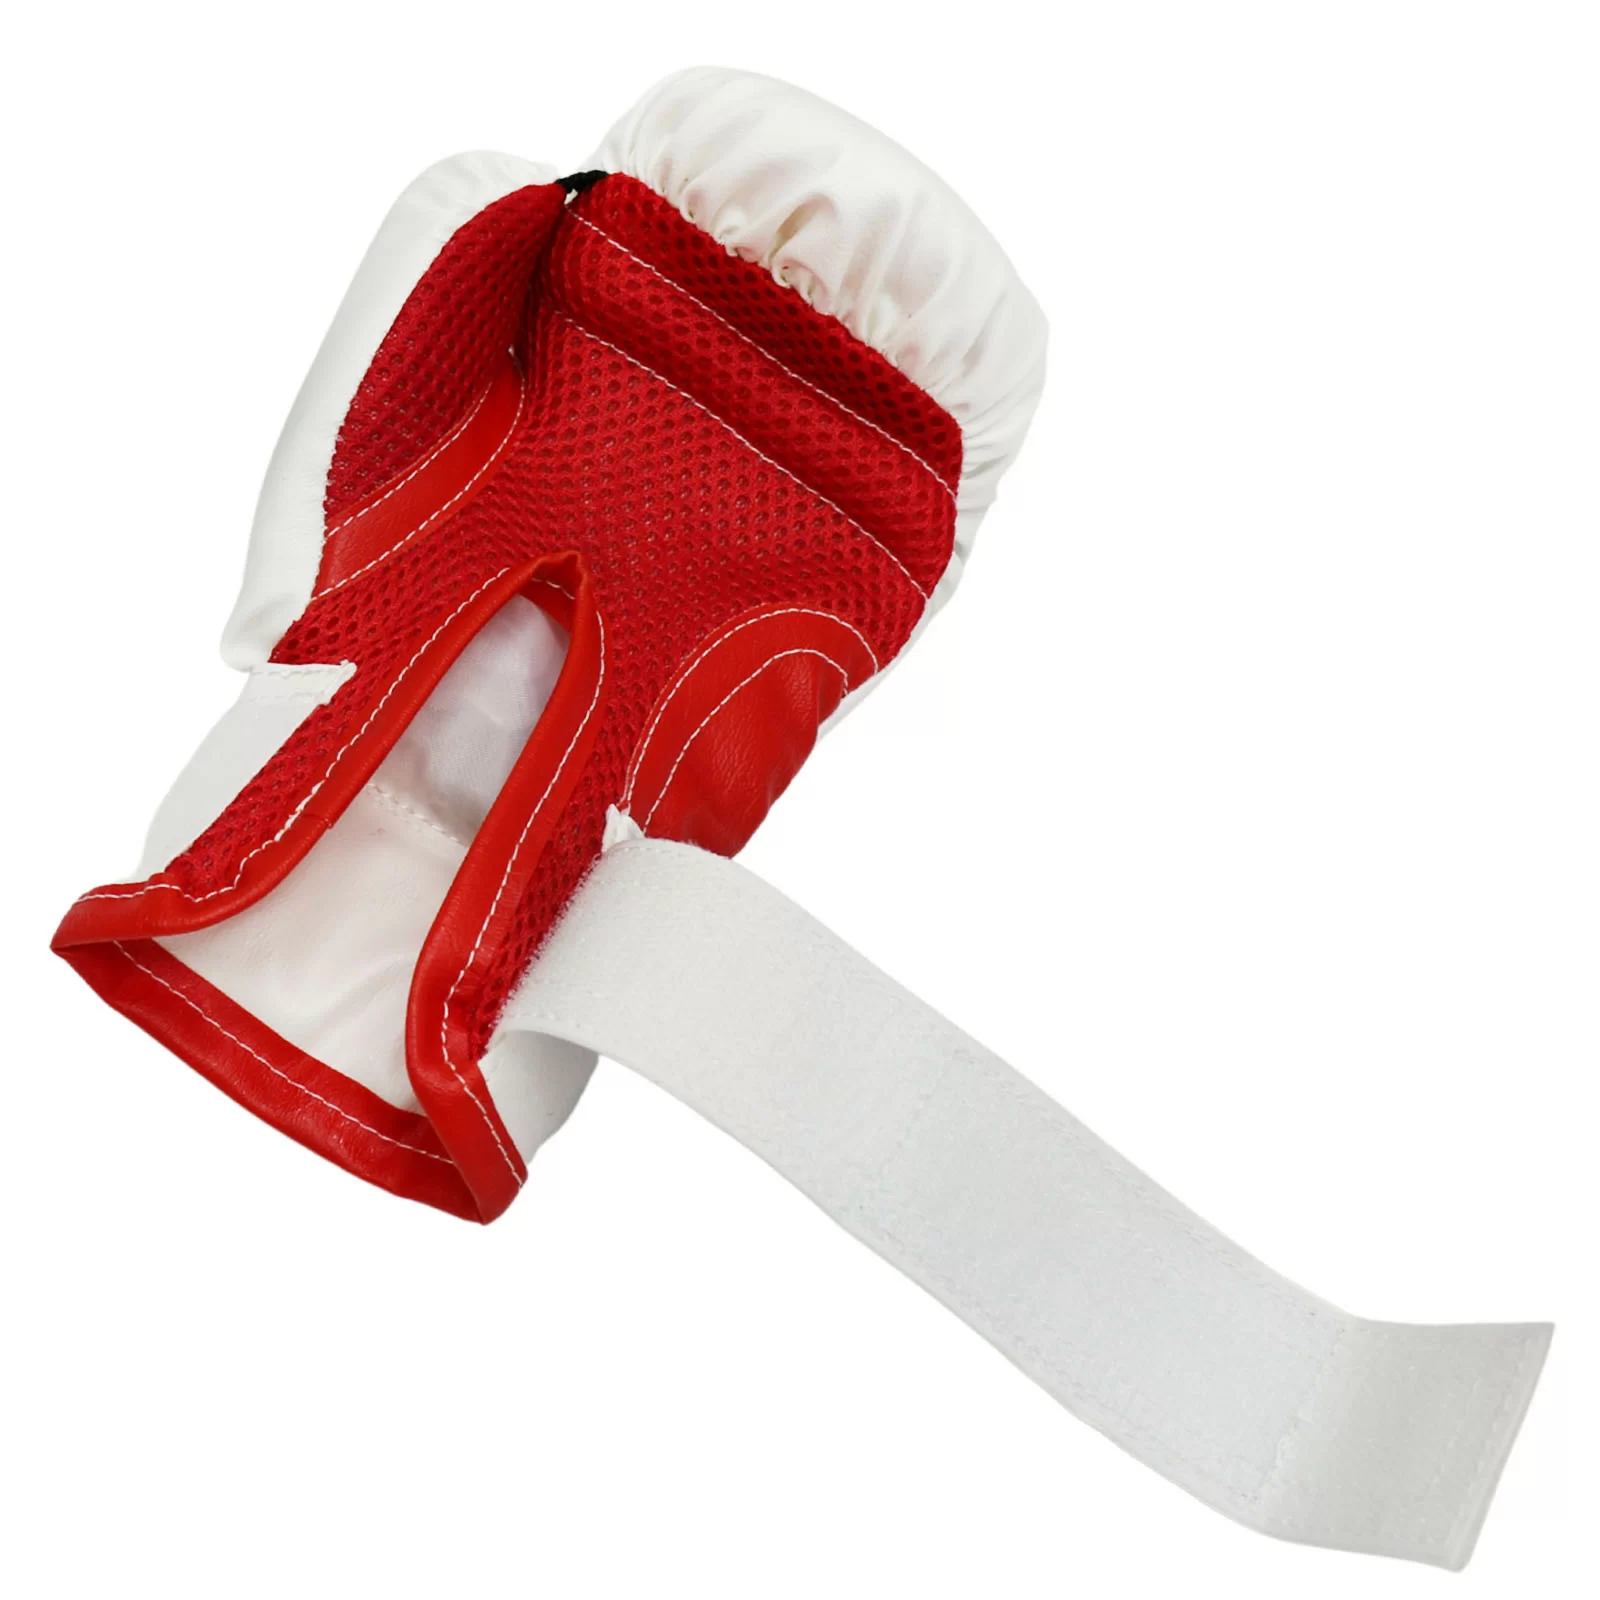 Фото Набор боксерский для начинающих RuscoSport Триколор (перчатки бокс. 4 oz) красный со склада магазина СпортСЕ